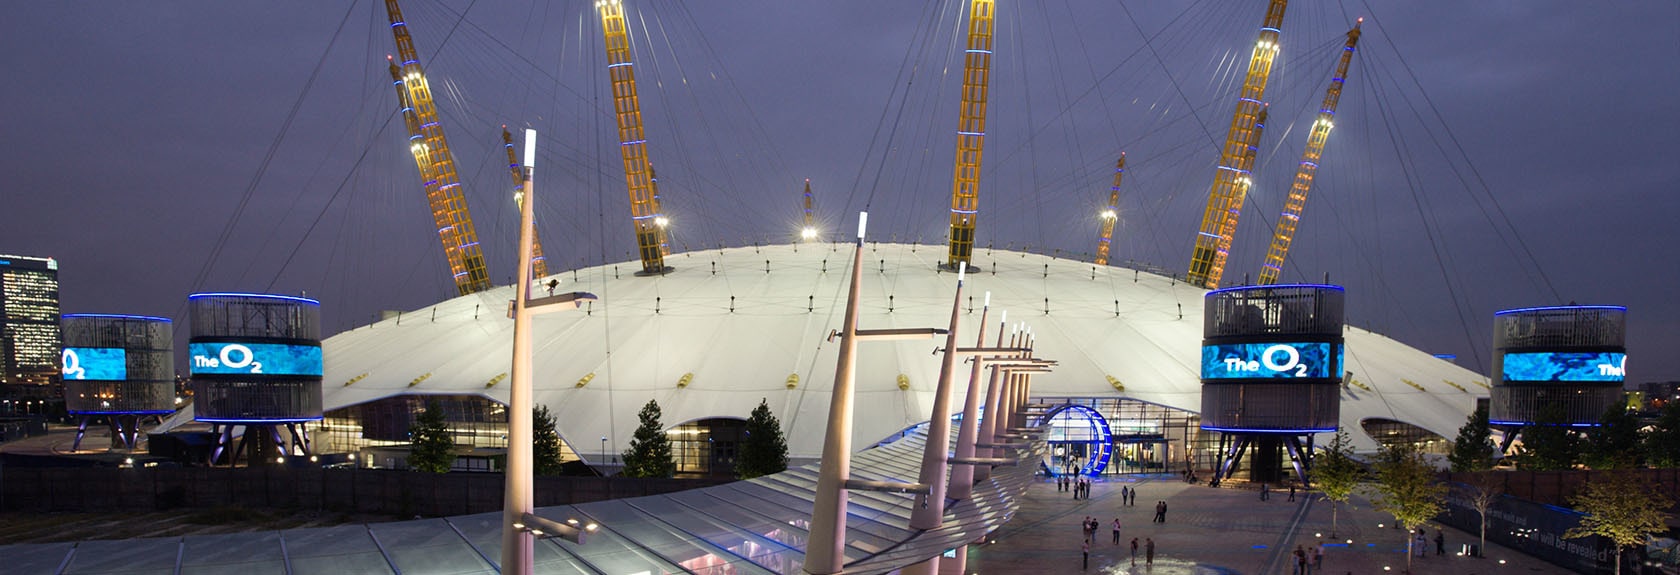 Descubra Londres de uma forma única do telhado da famosa O2 Arena durante a Up at the O2 escalada. Durante os 90 minutos de caminhada até o telhado da O2 Arena você verá um lado único de Londres